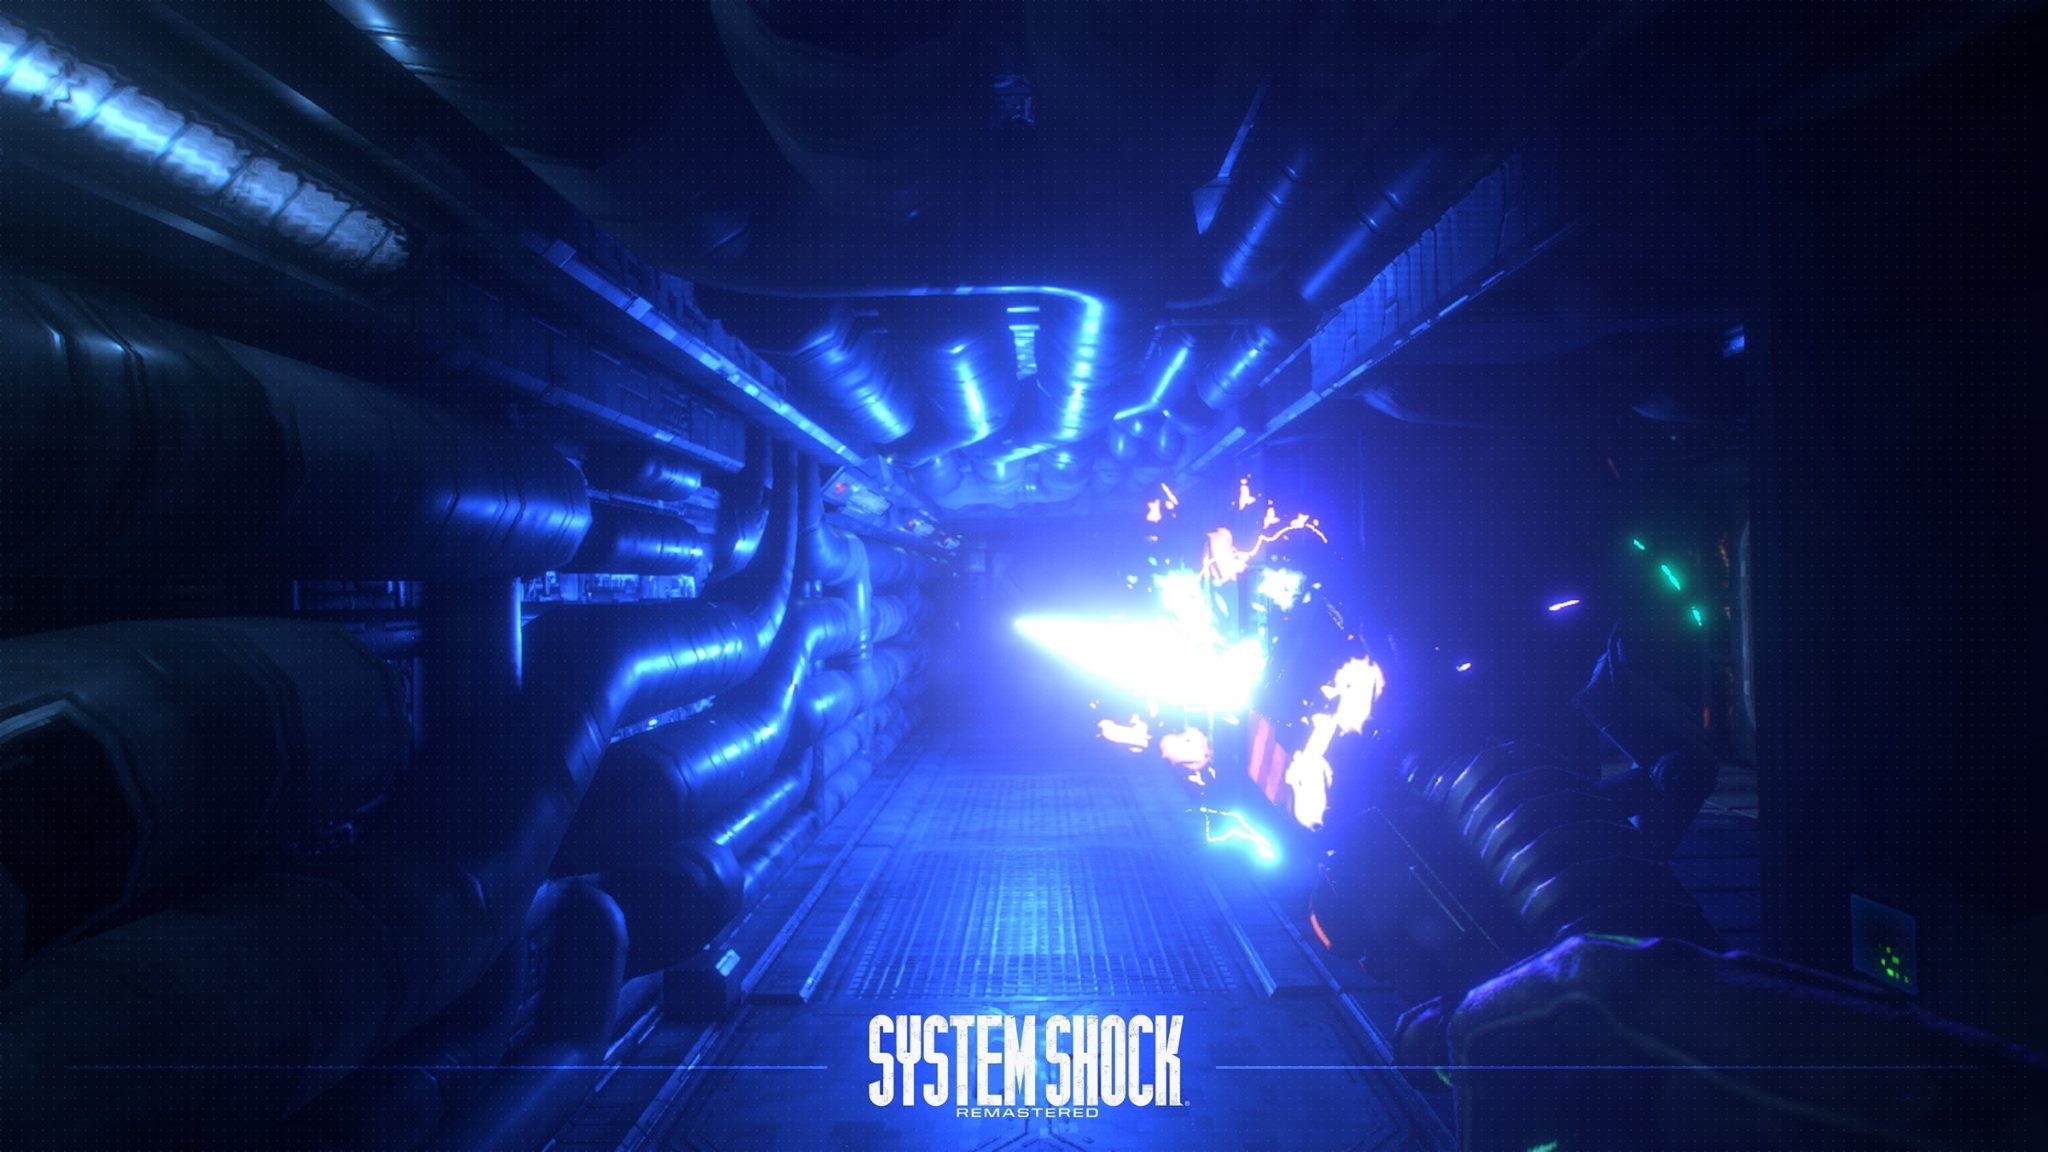 system shock 1 enhanced edition 1920x1080